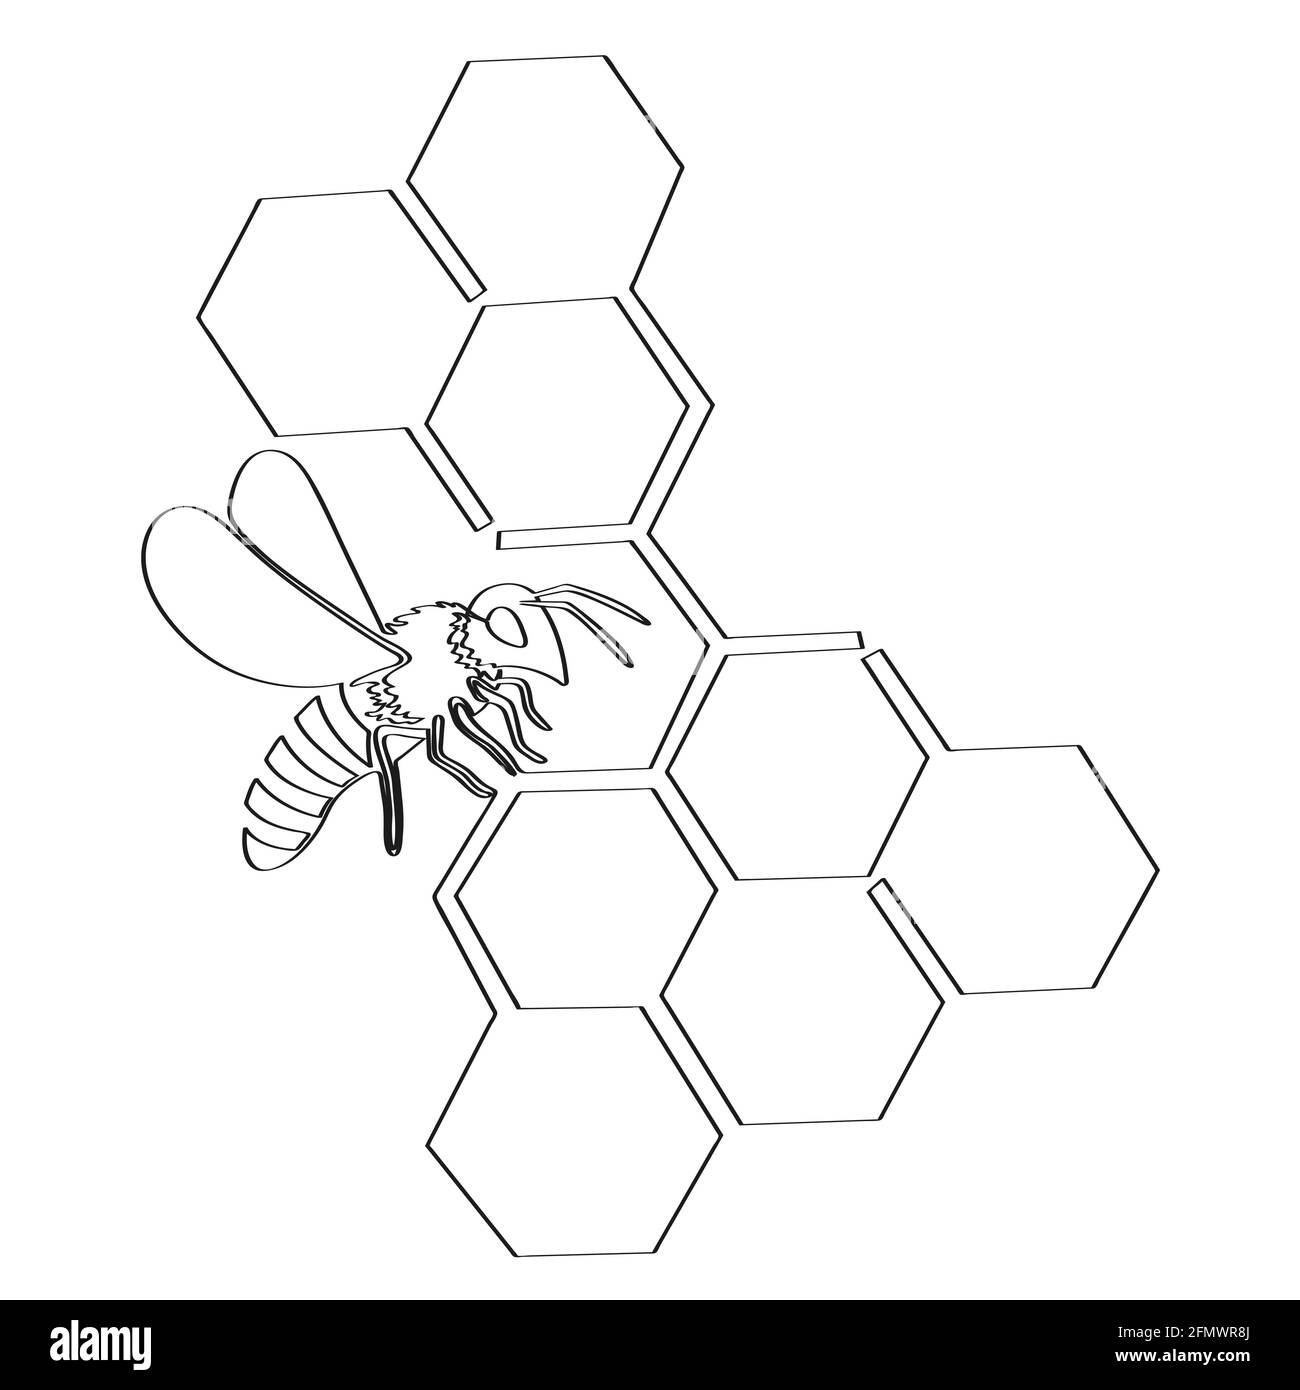 L'abeille et le nid d'abeille sont dessinés avec une ligne pleine. Illustration vectorielle isolée sur fond blanc Illustration de Vecteur